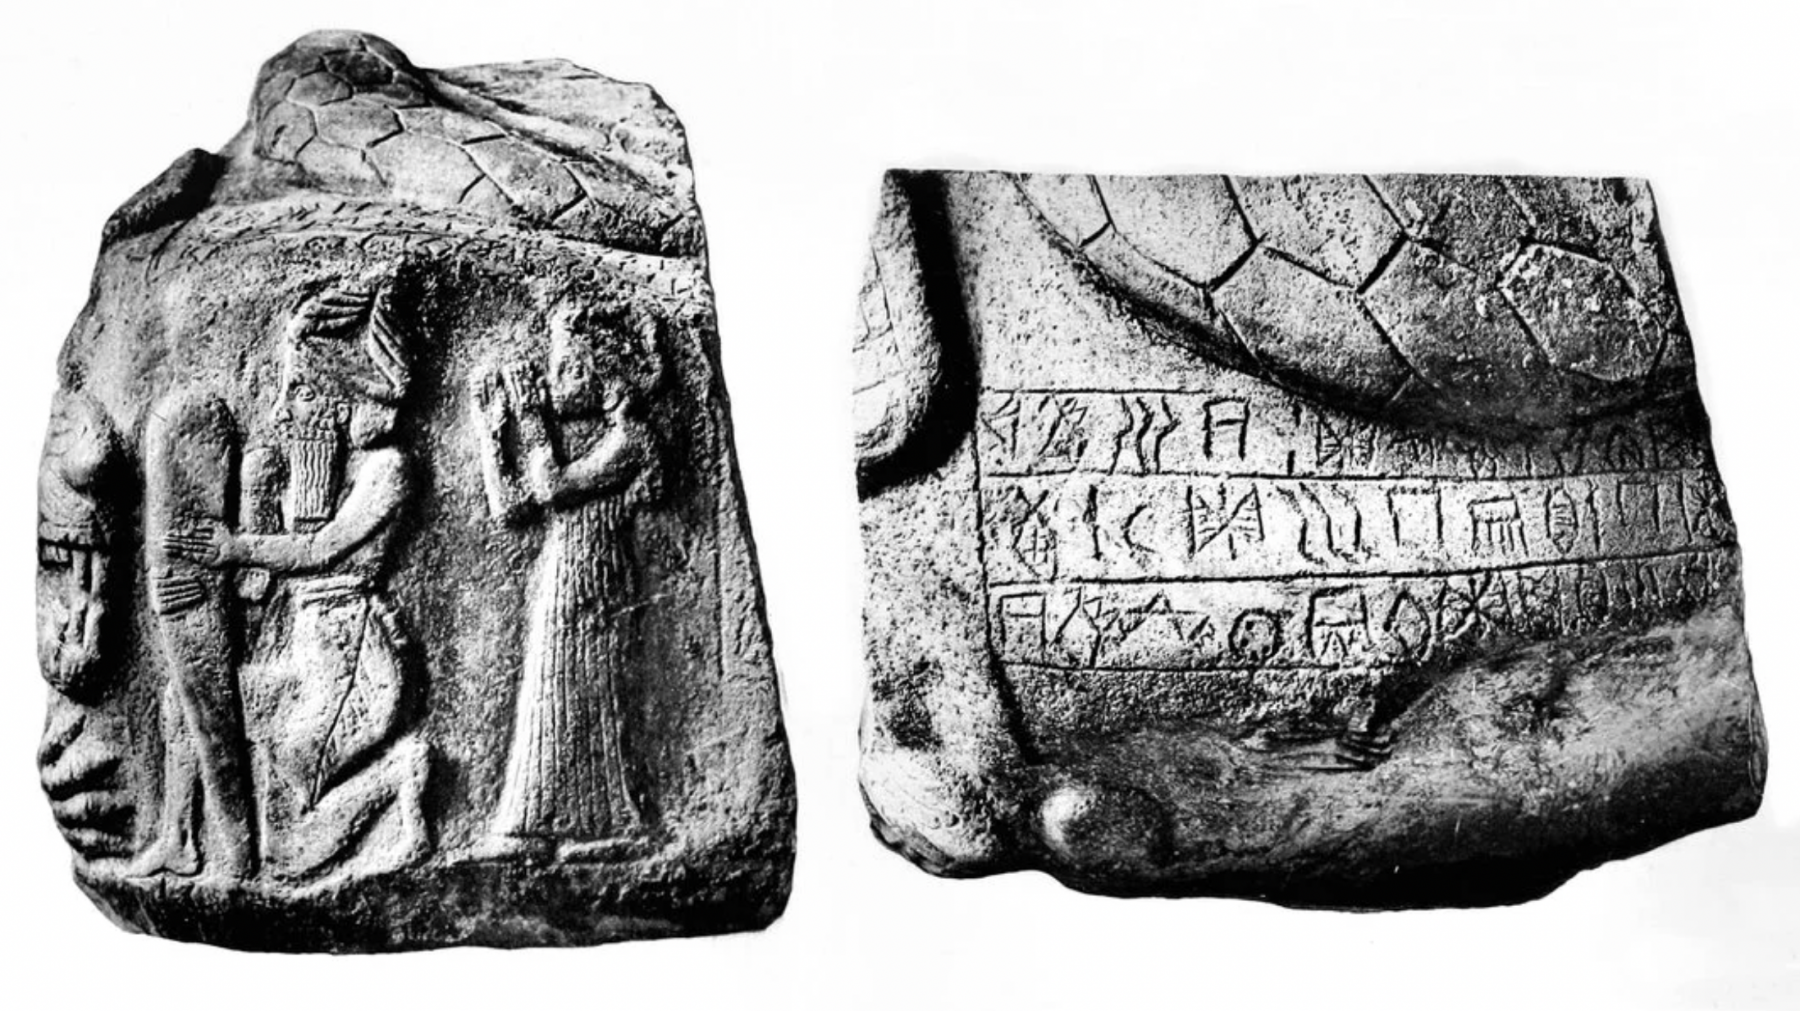 Ancient script